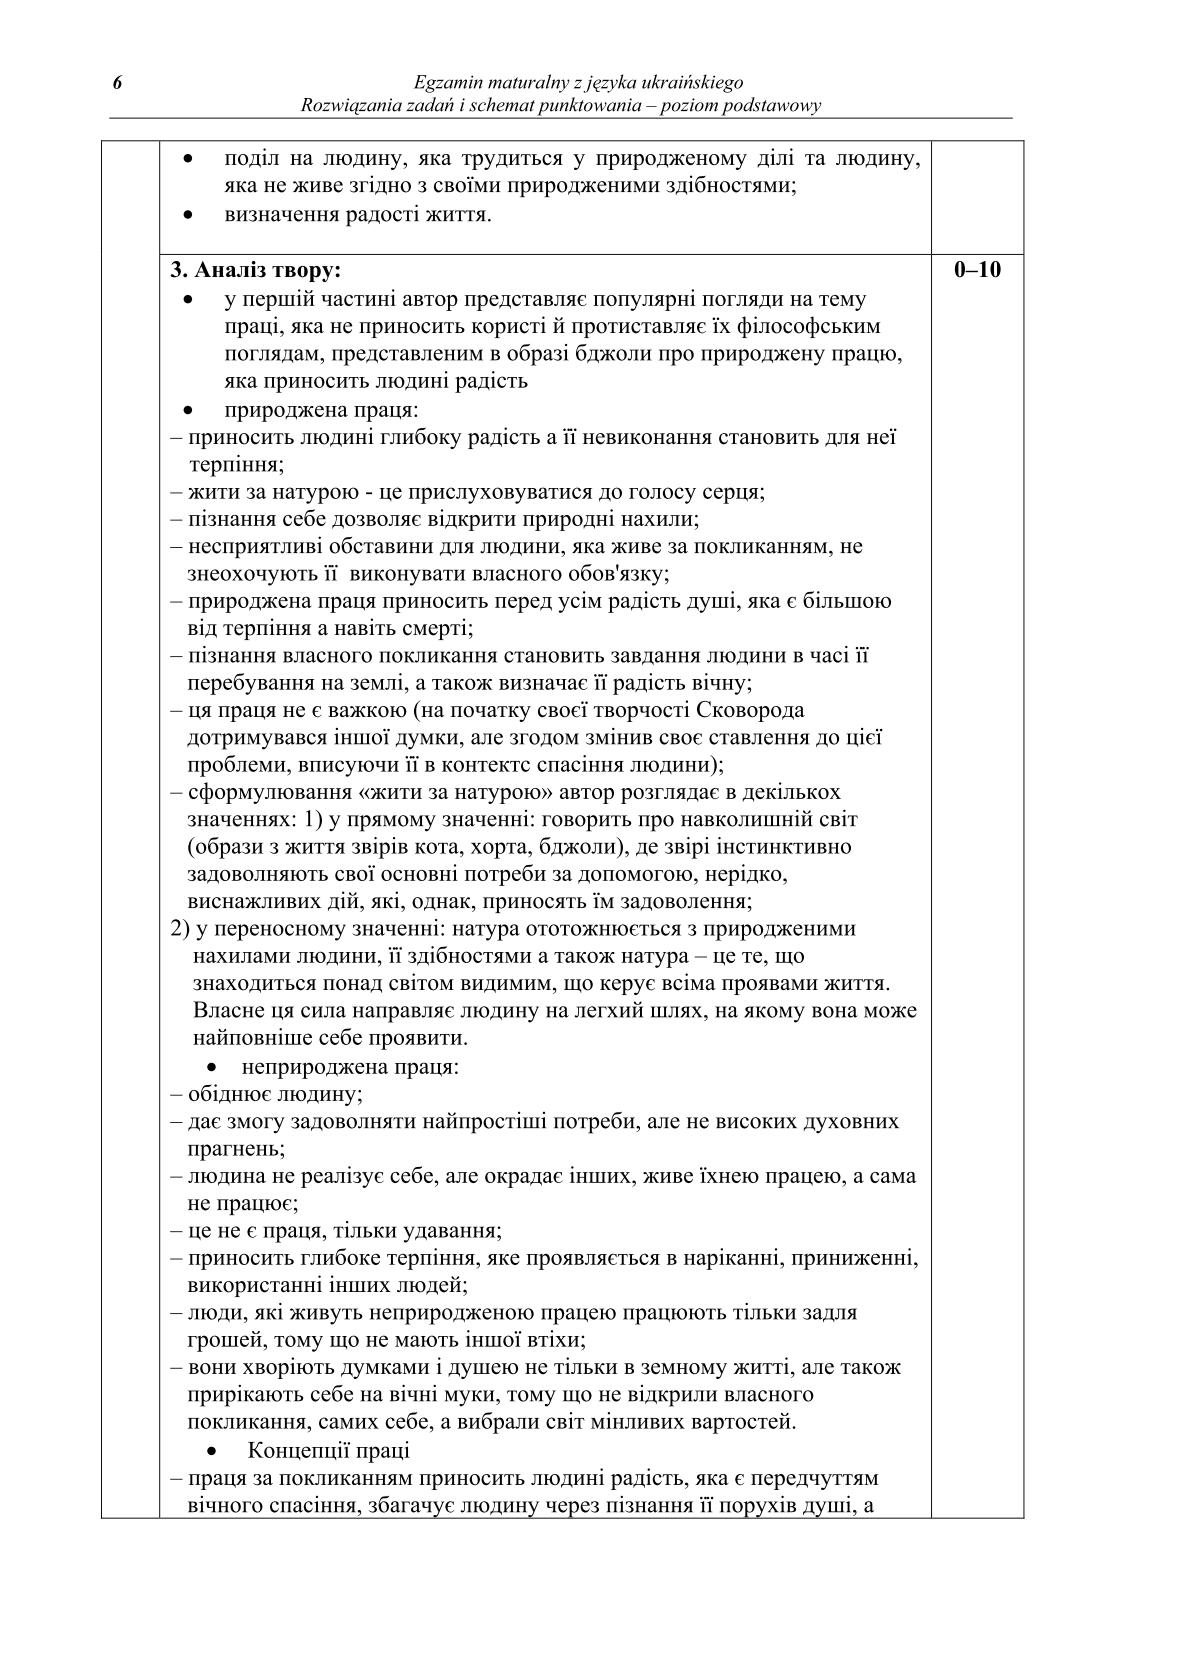 odpowiedzi-jezyk-ukrainski-poziom-podstawowy-matura-2014-str.6